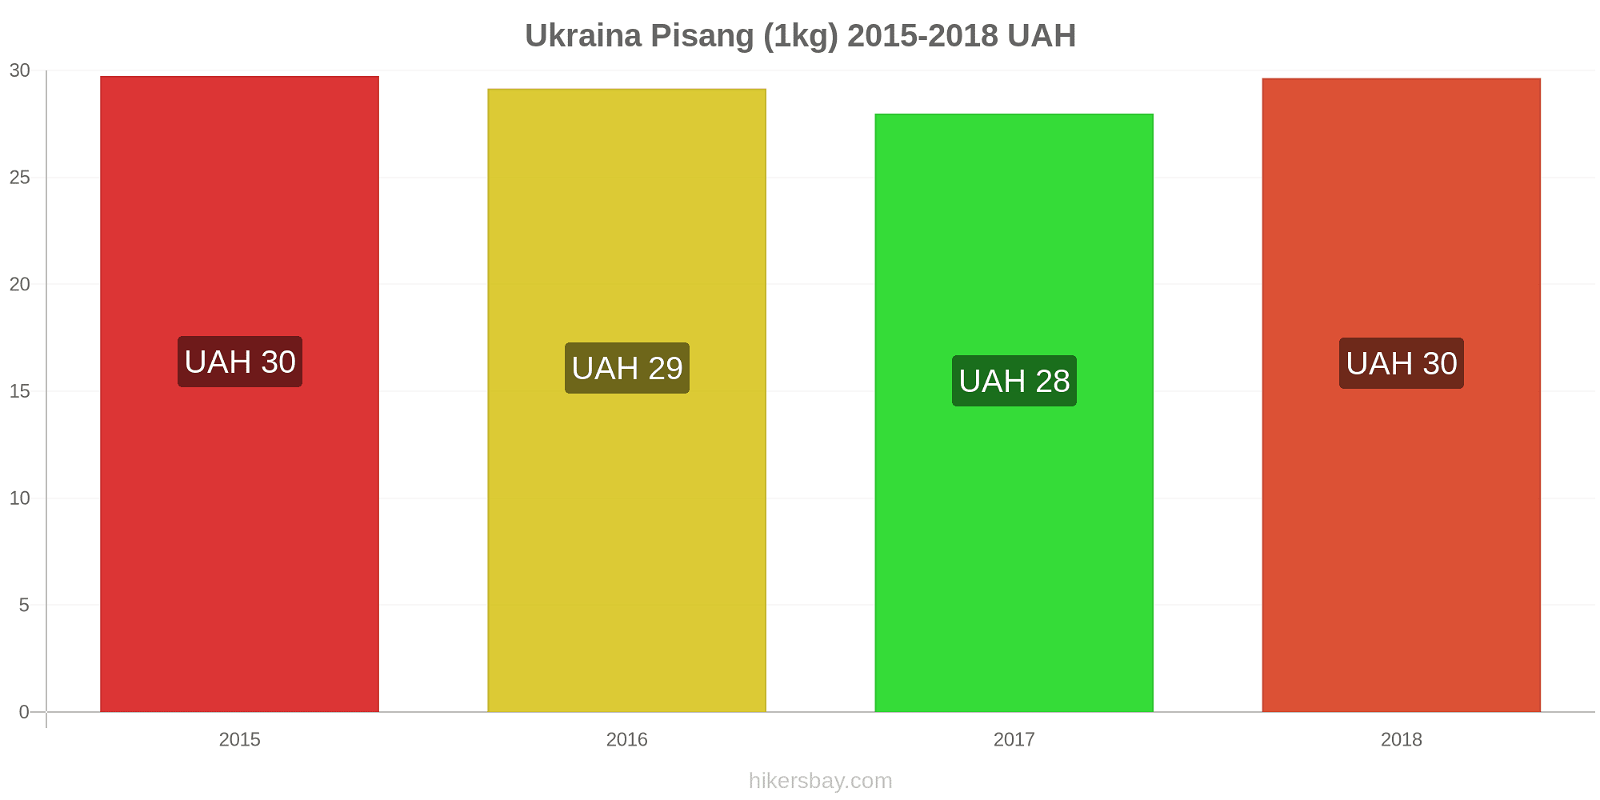 Ukraina perubahan harga Pisang (1kg) hikersbay.com